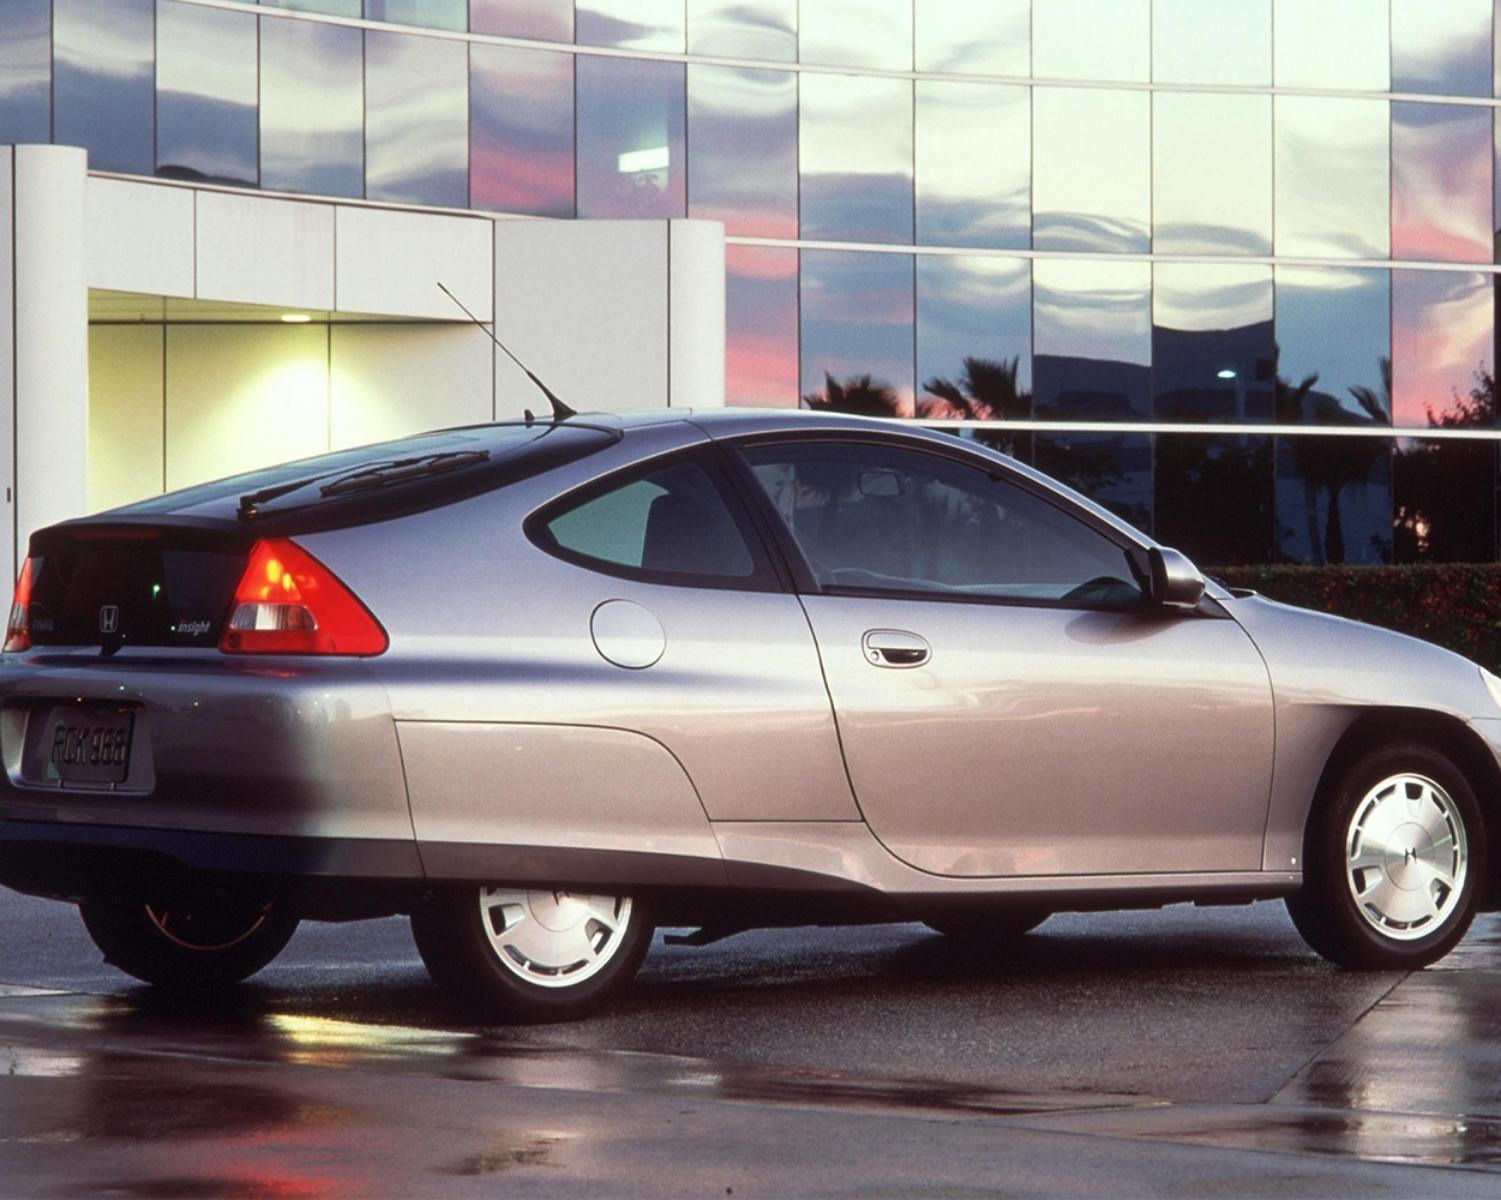 2000 – Hybrid cars